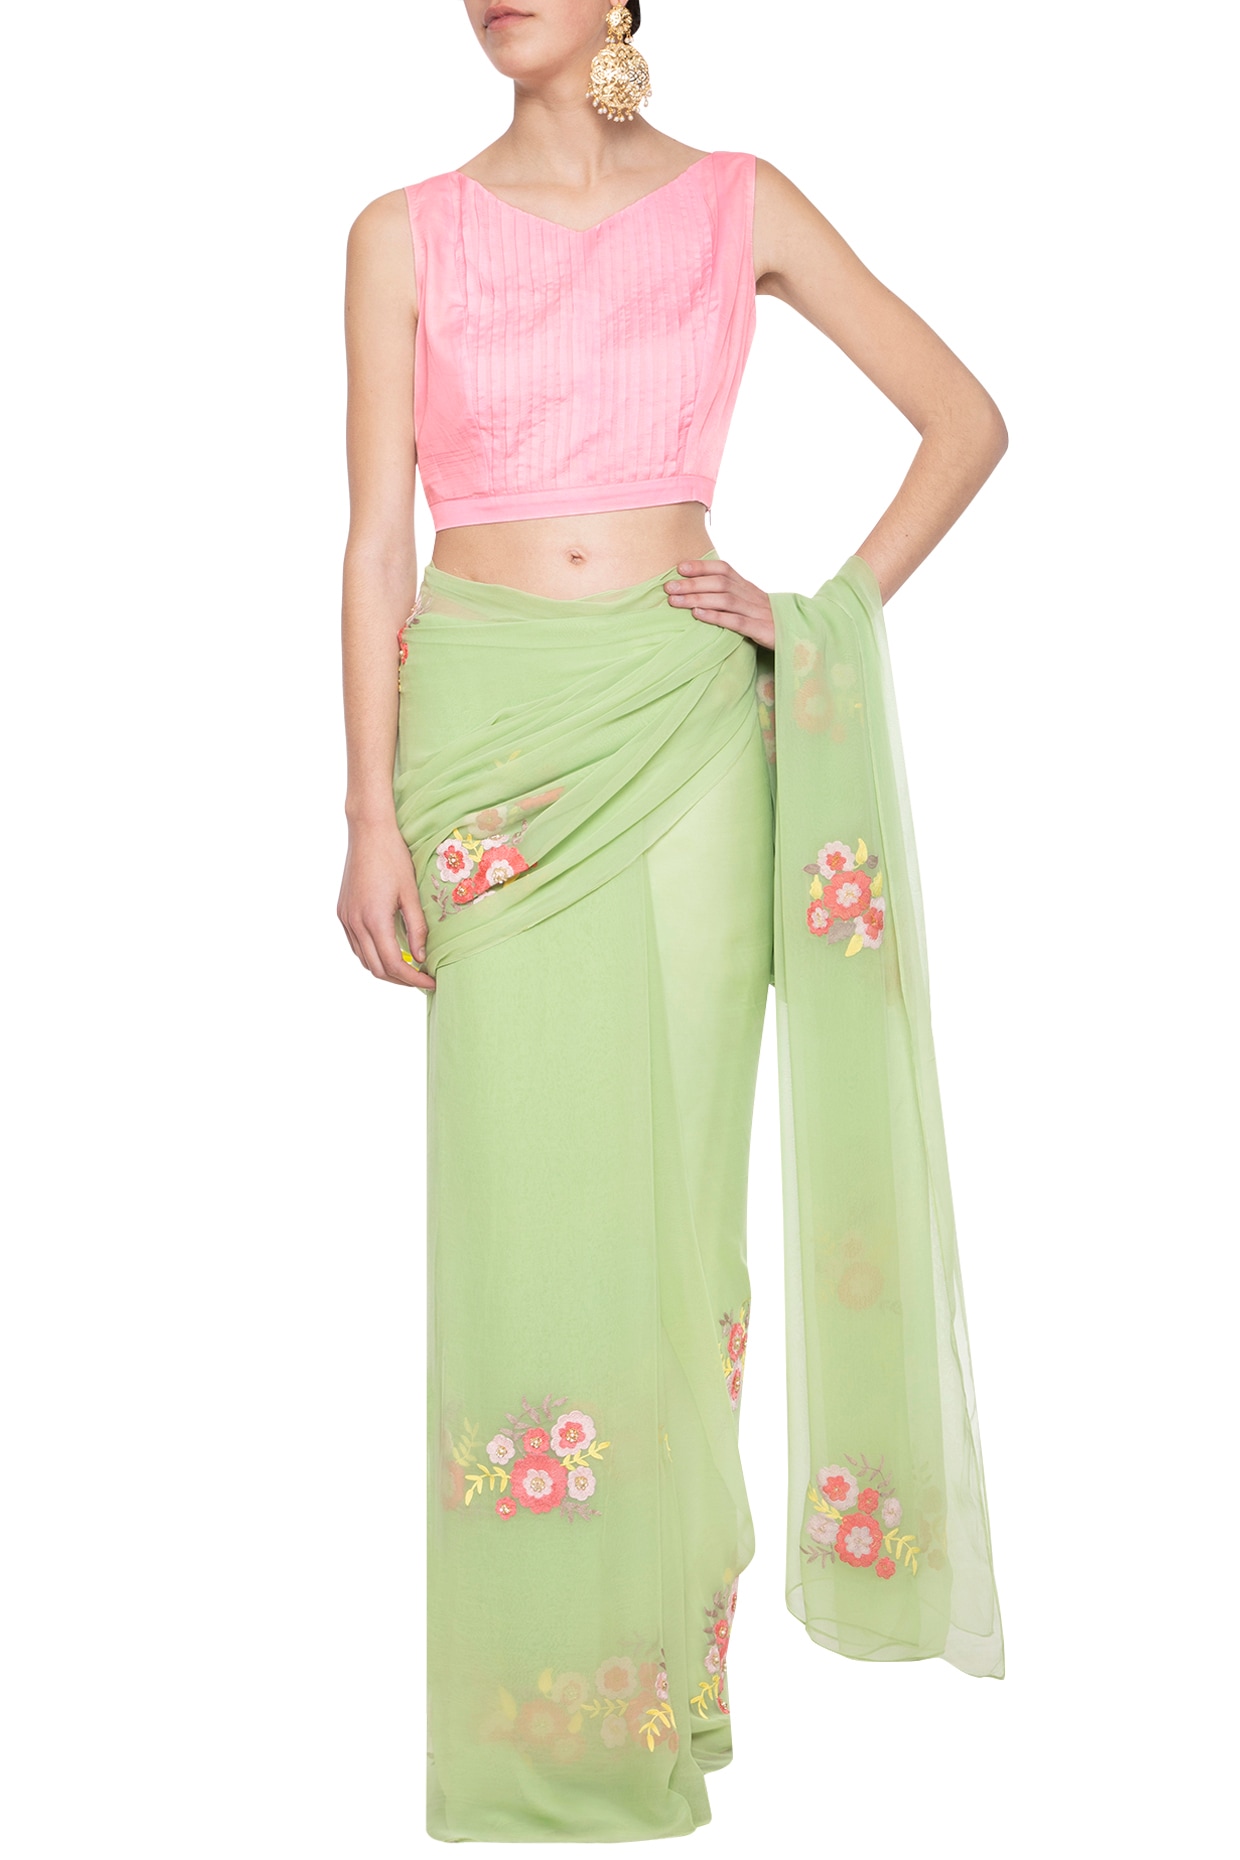 Blouse For Saree Online Green Pink Colour Saree - Designer Sarees Rs 500 to  1000 - SareesWala.com